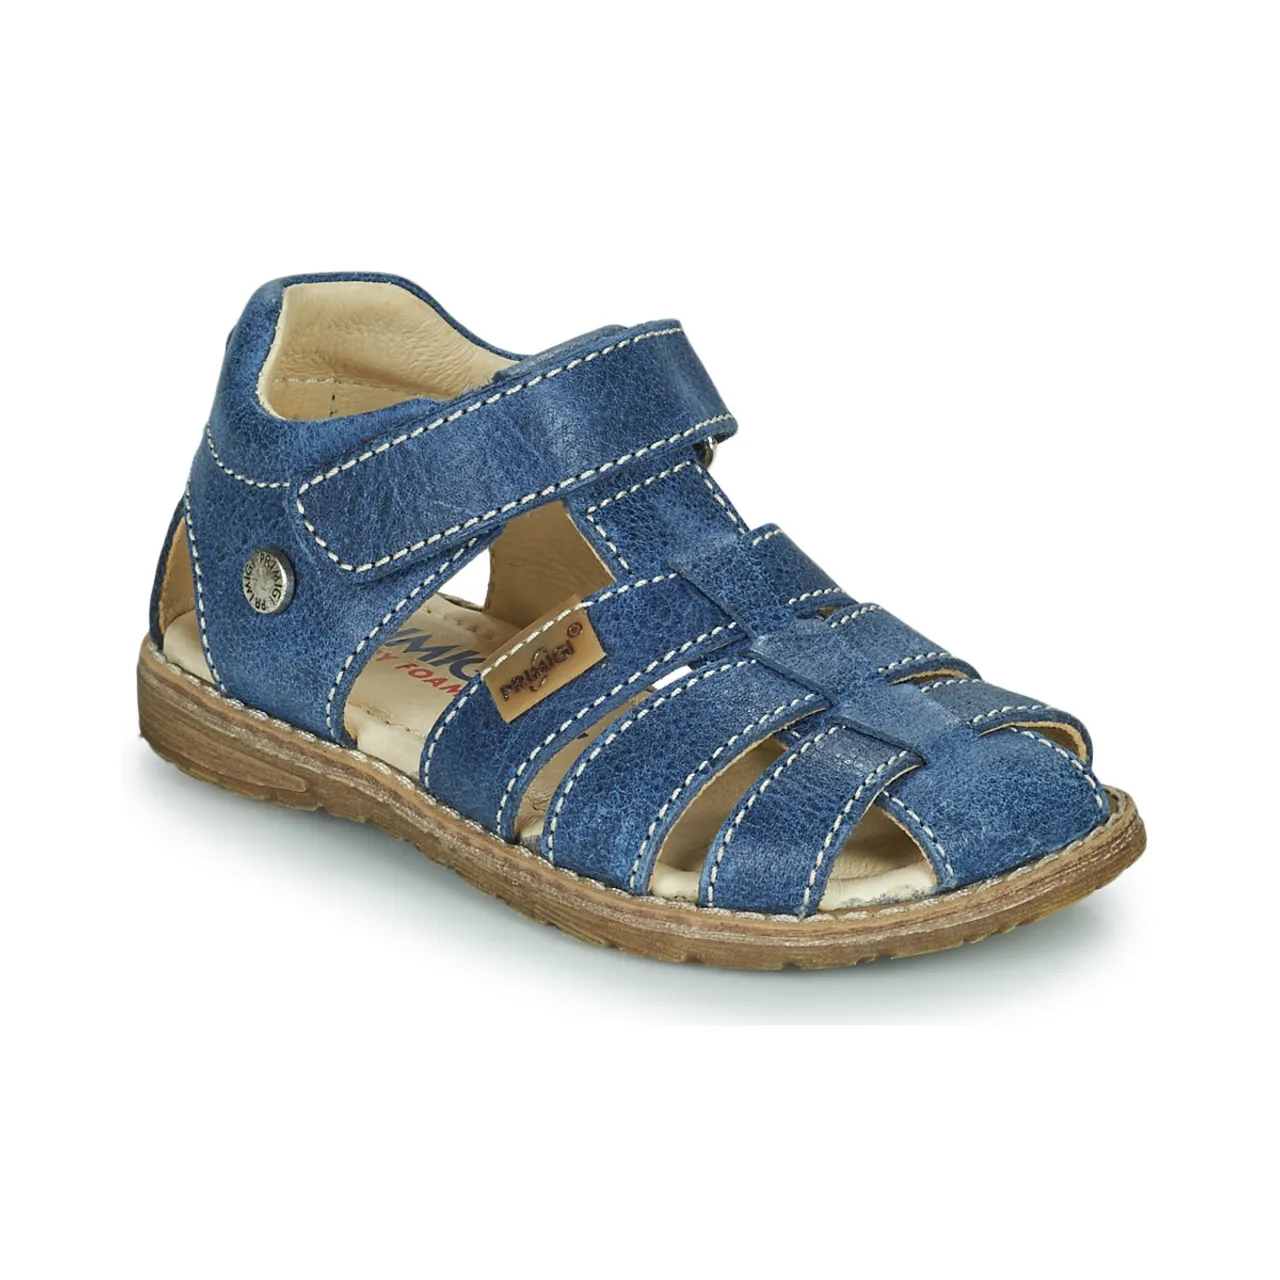 Primigi  1914511-C  boys's Children's Sandals in Blue